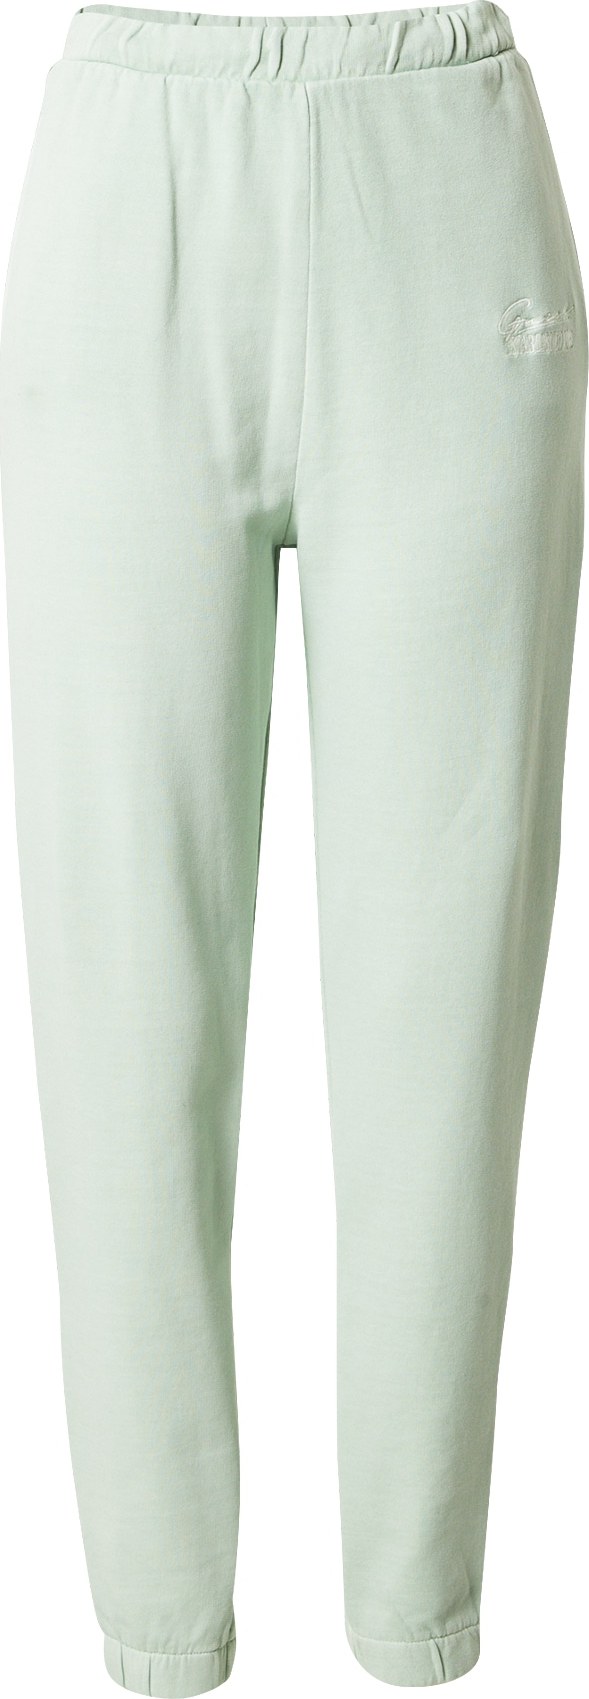 GUESS Sportovní kalhoty 'DIANE' pastelově zelená / bílá